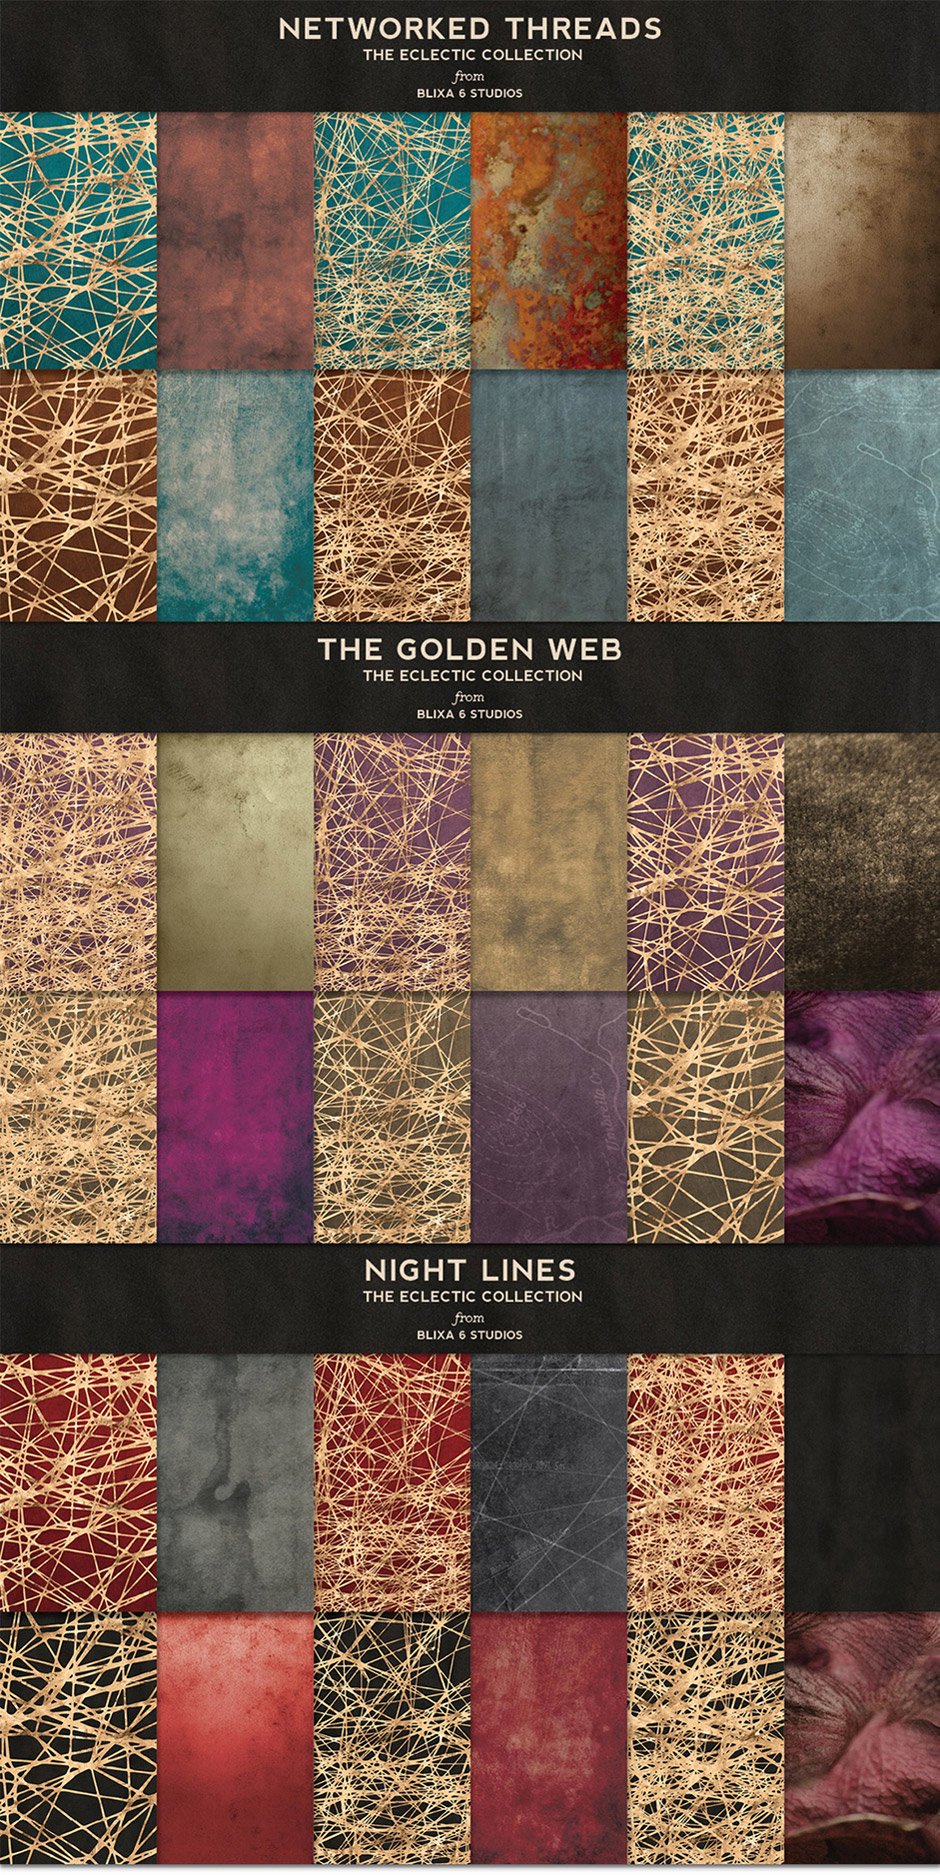 36 Golden Woven Webs